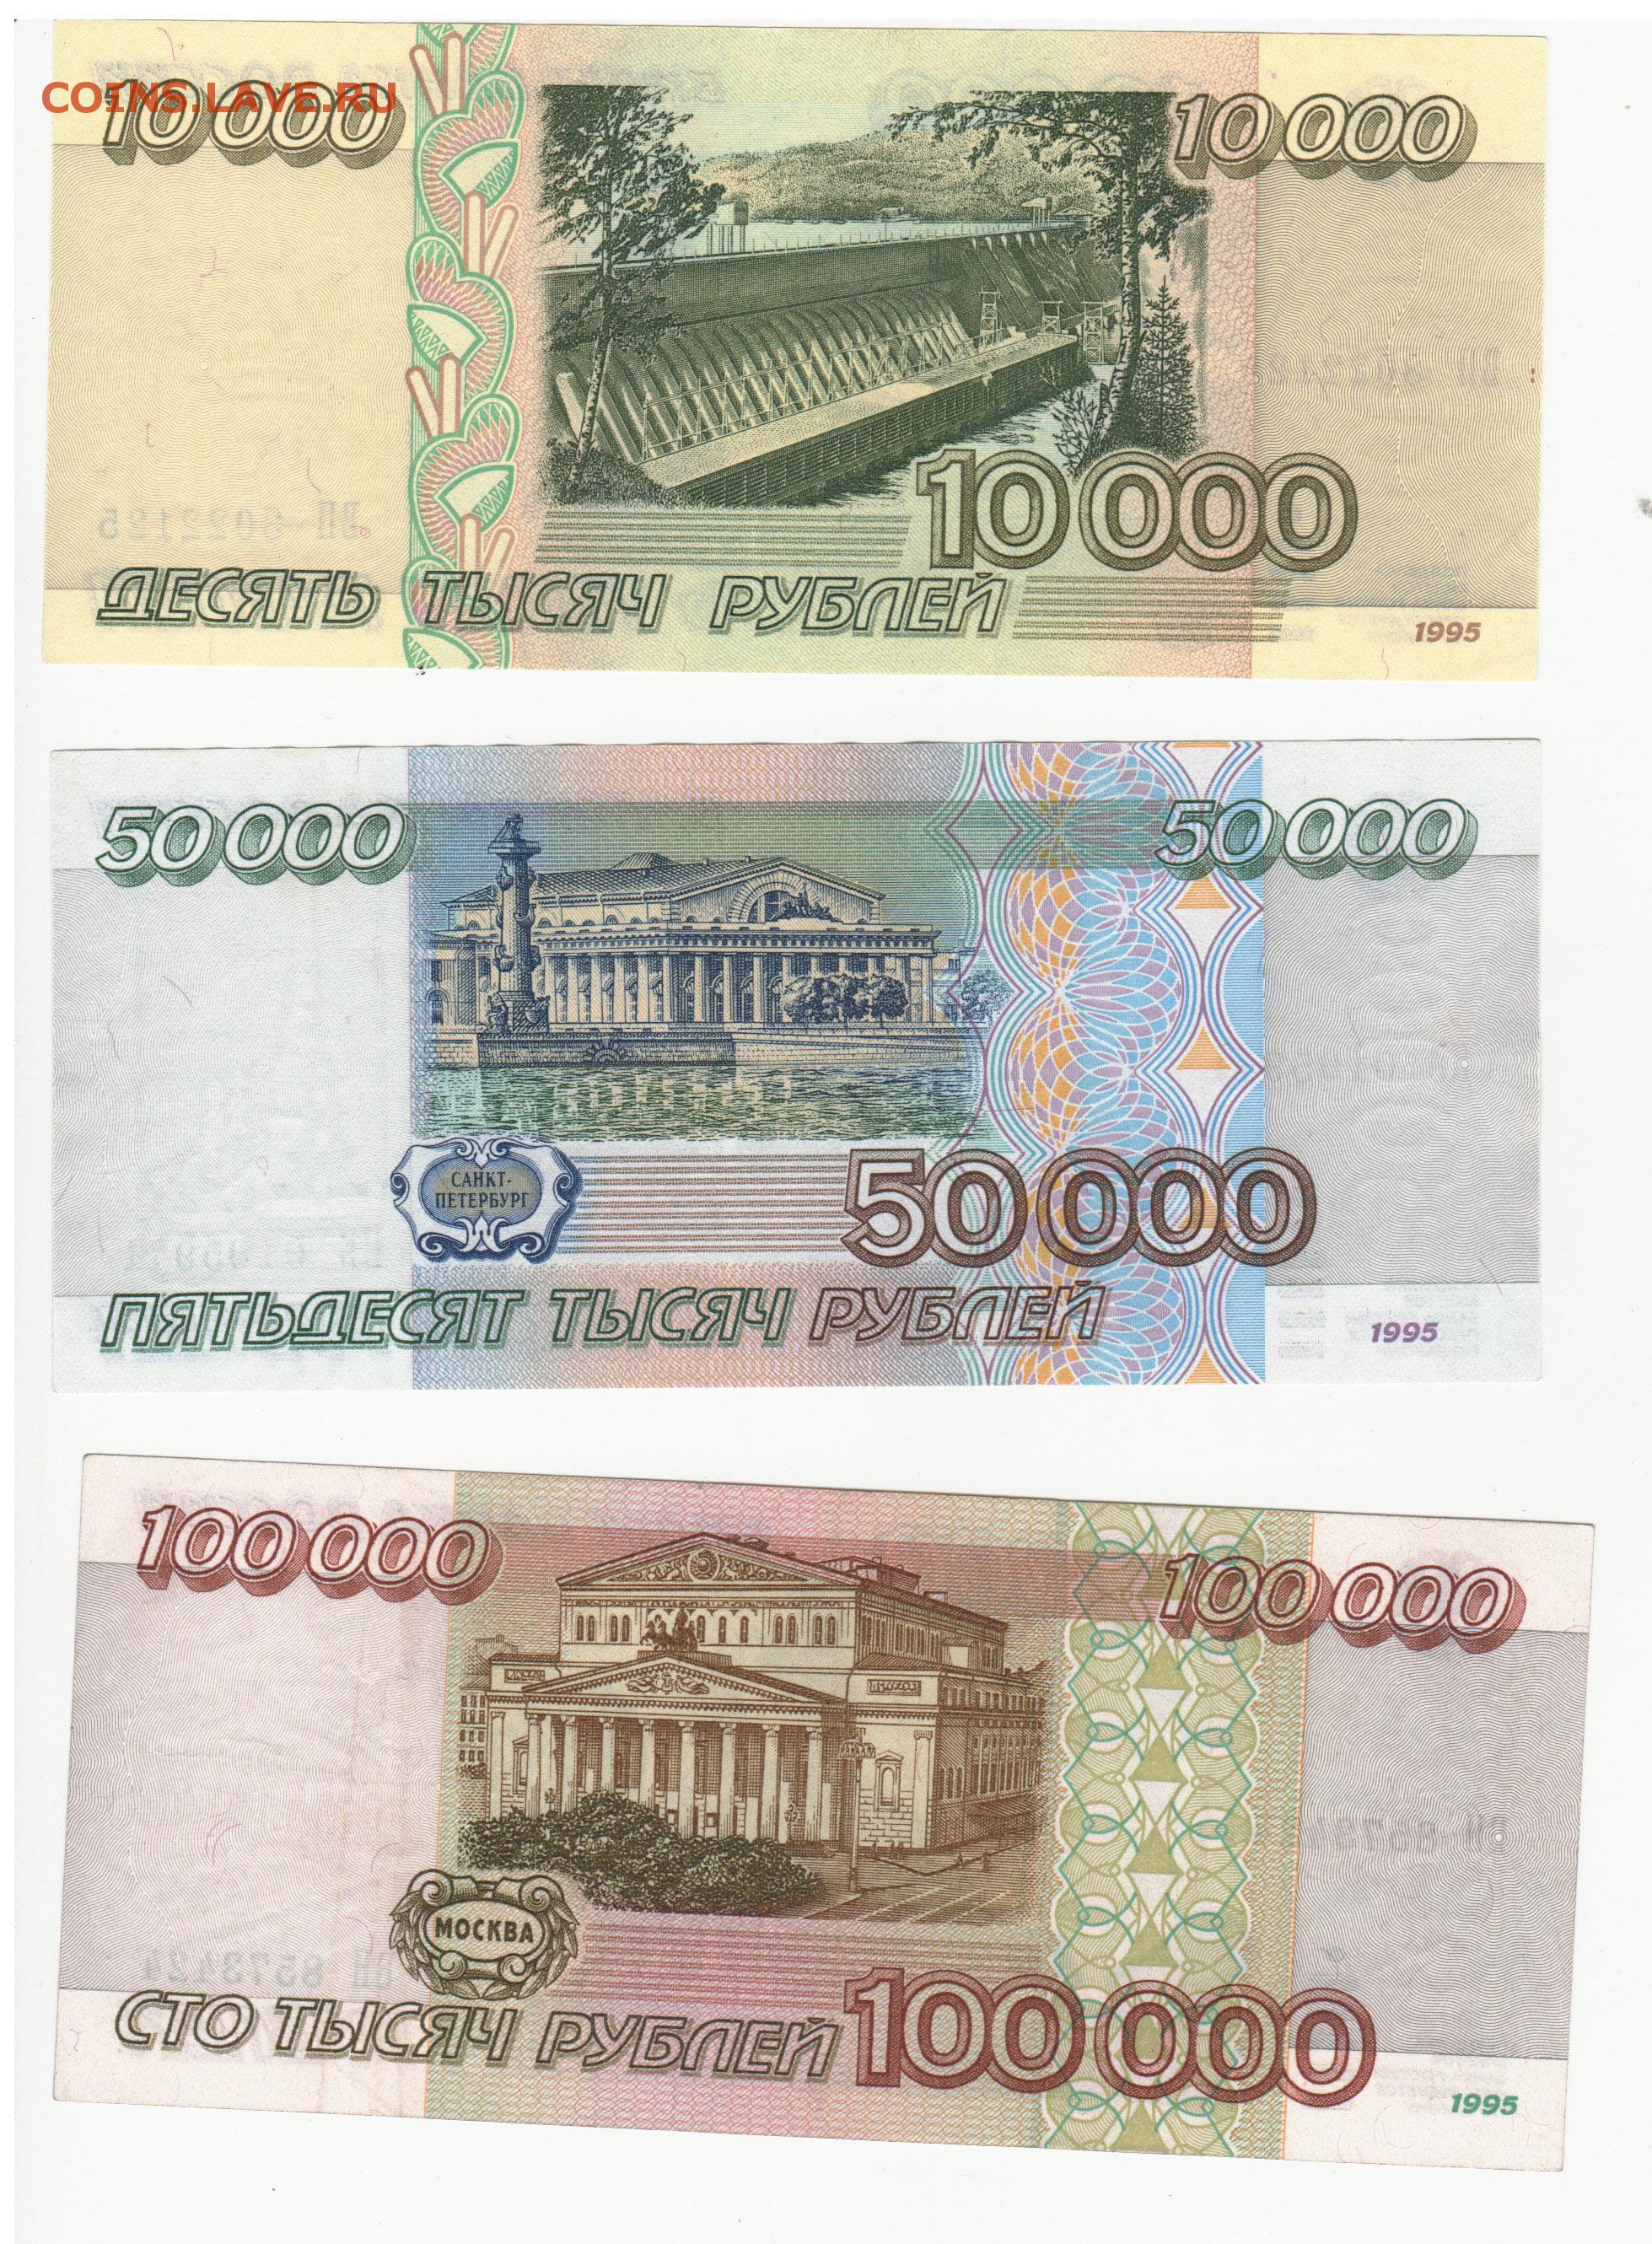 100.000 10. 100000 Рублей 1995 года. Банкнота 100000 рублей 1995. 50 000 Рублей купюра 1995 года. СТО тысяч рублей купюра.